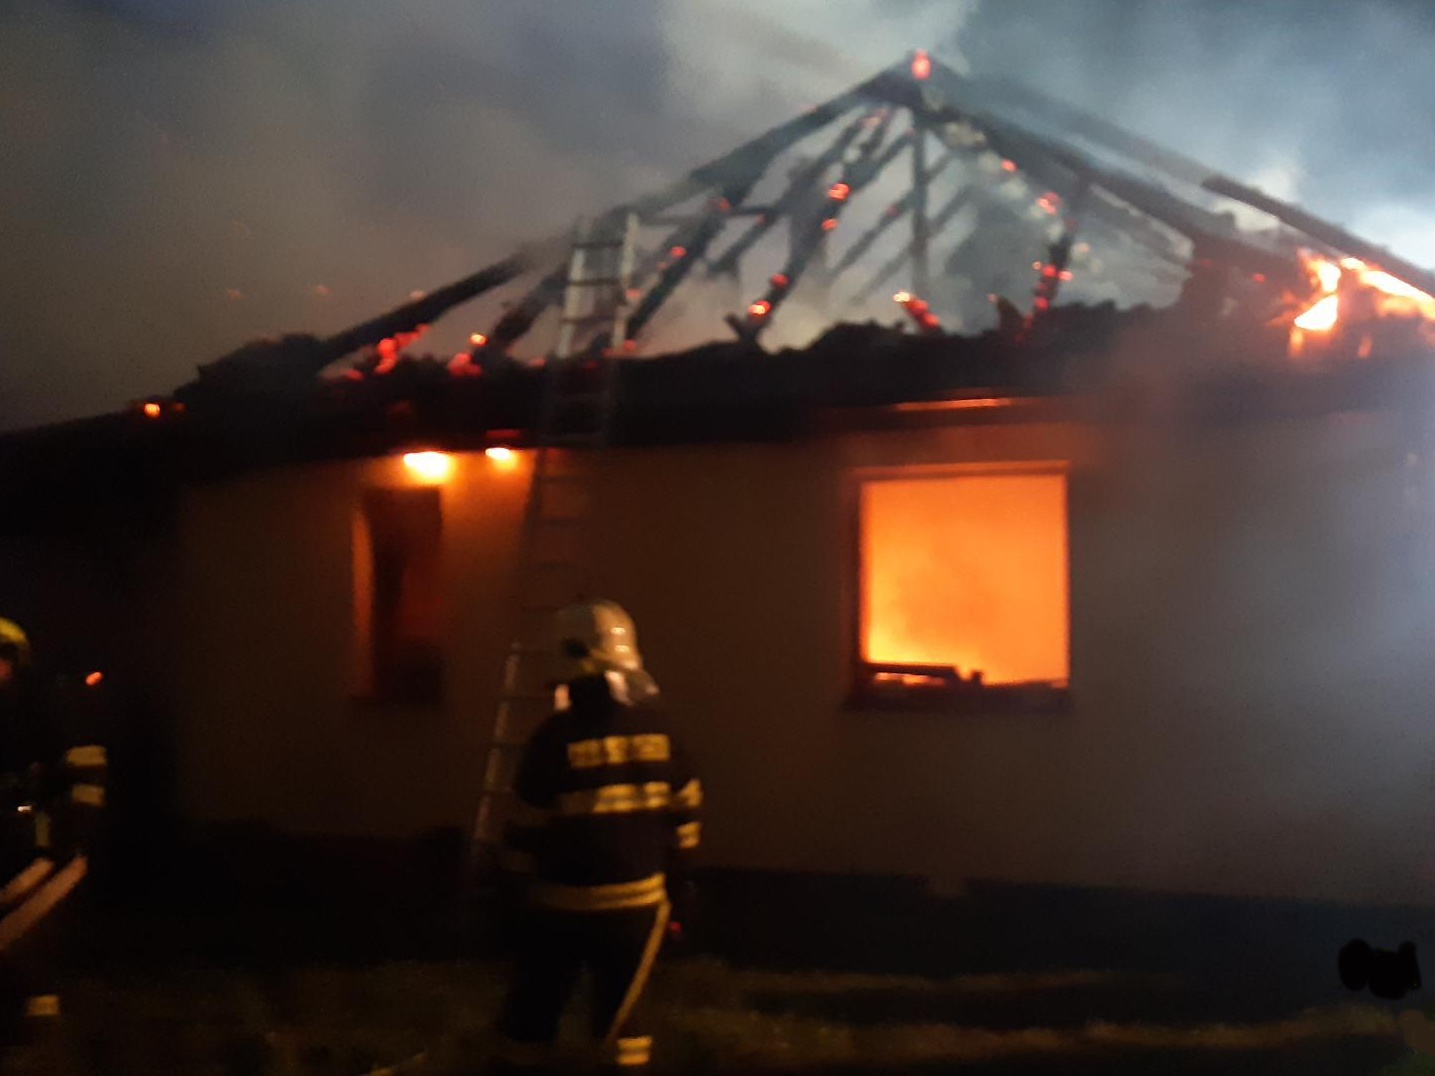 002 - noční požár rodinného domu v Nových Jirnech.jpg